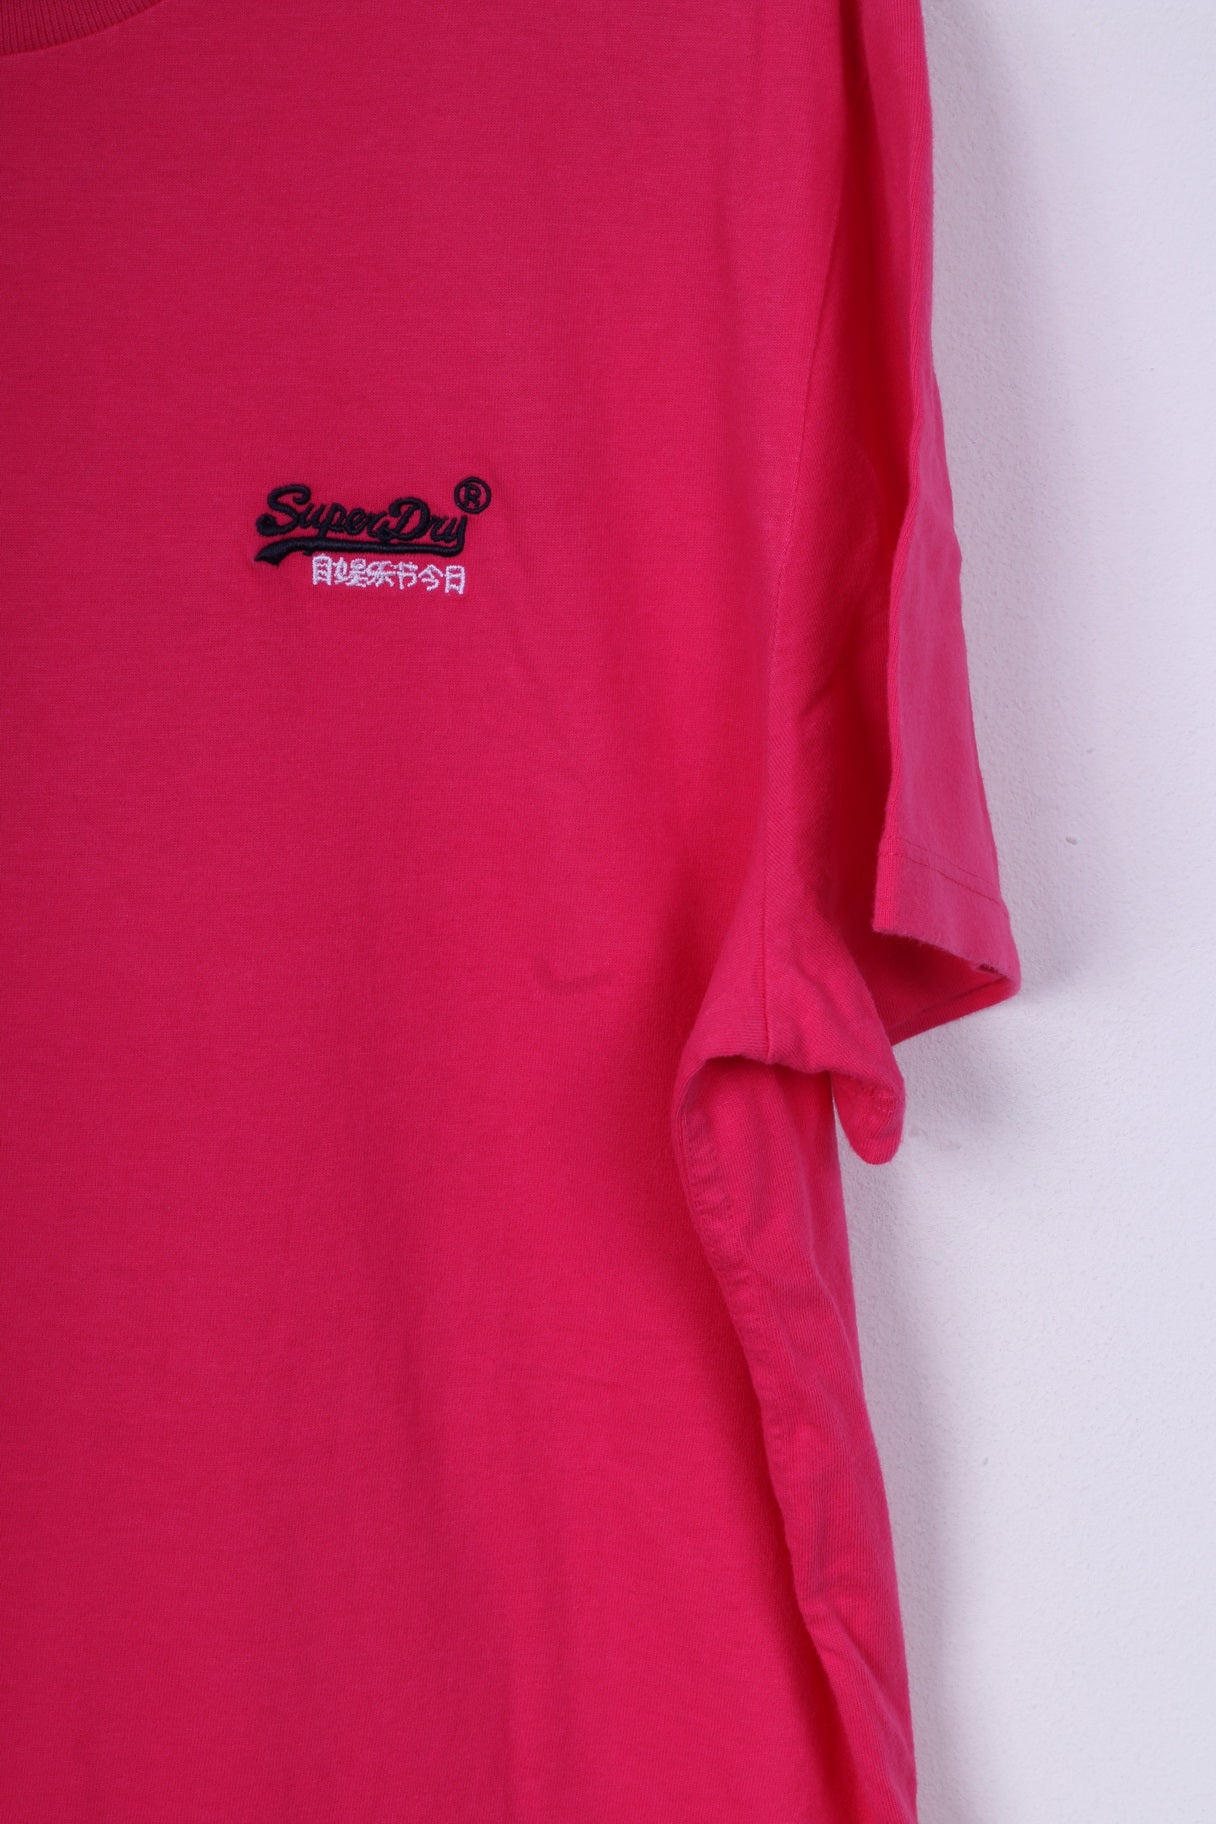 Superdry T-shirt 2XL (XL) pour homme en coton rose avec logo orange 